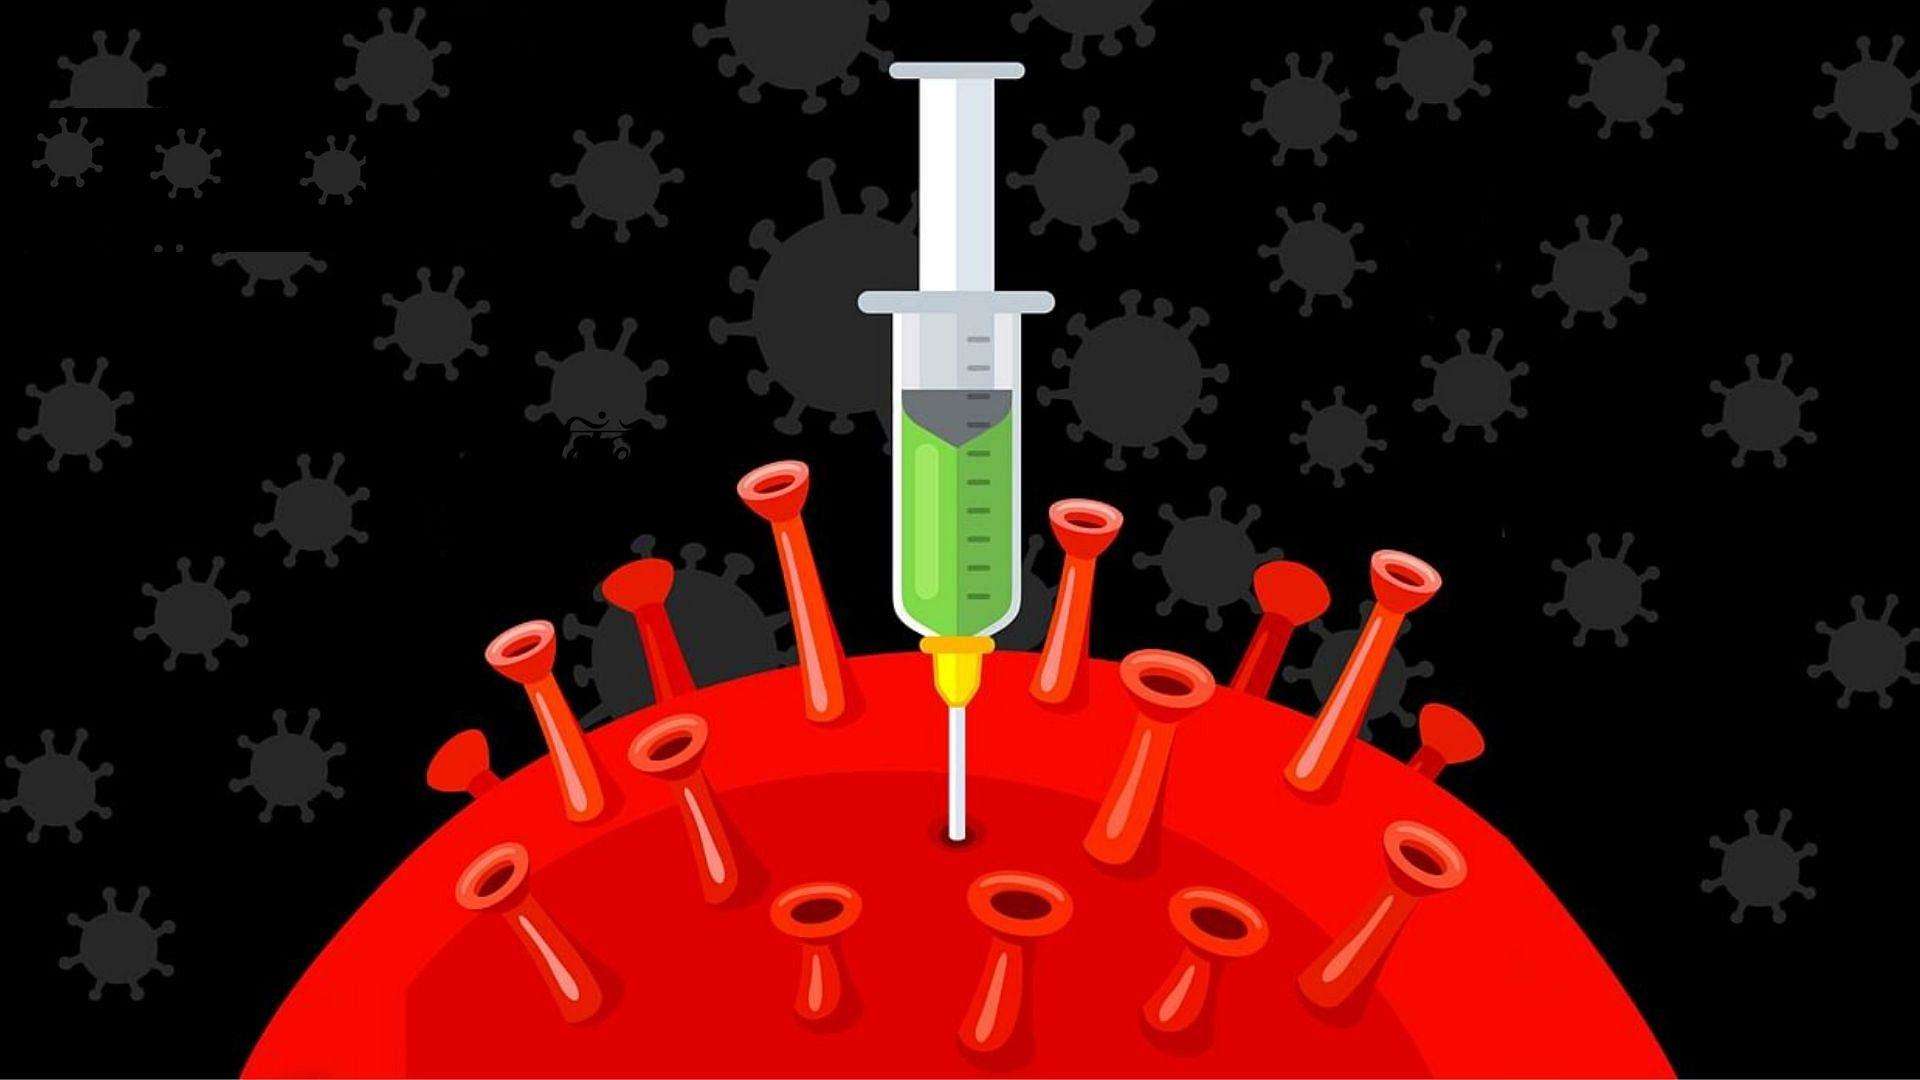 कोविद -19 वैक्सीन: रोग सुरक्षा के लिए एक खुराक का आपको कितना भुगतान करना होगा?,जानें